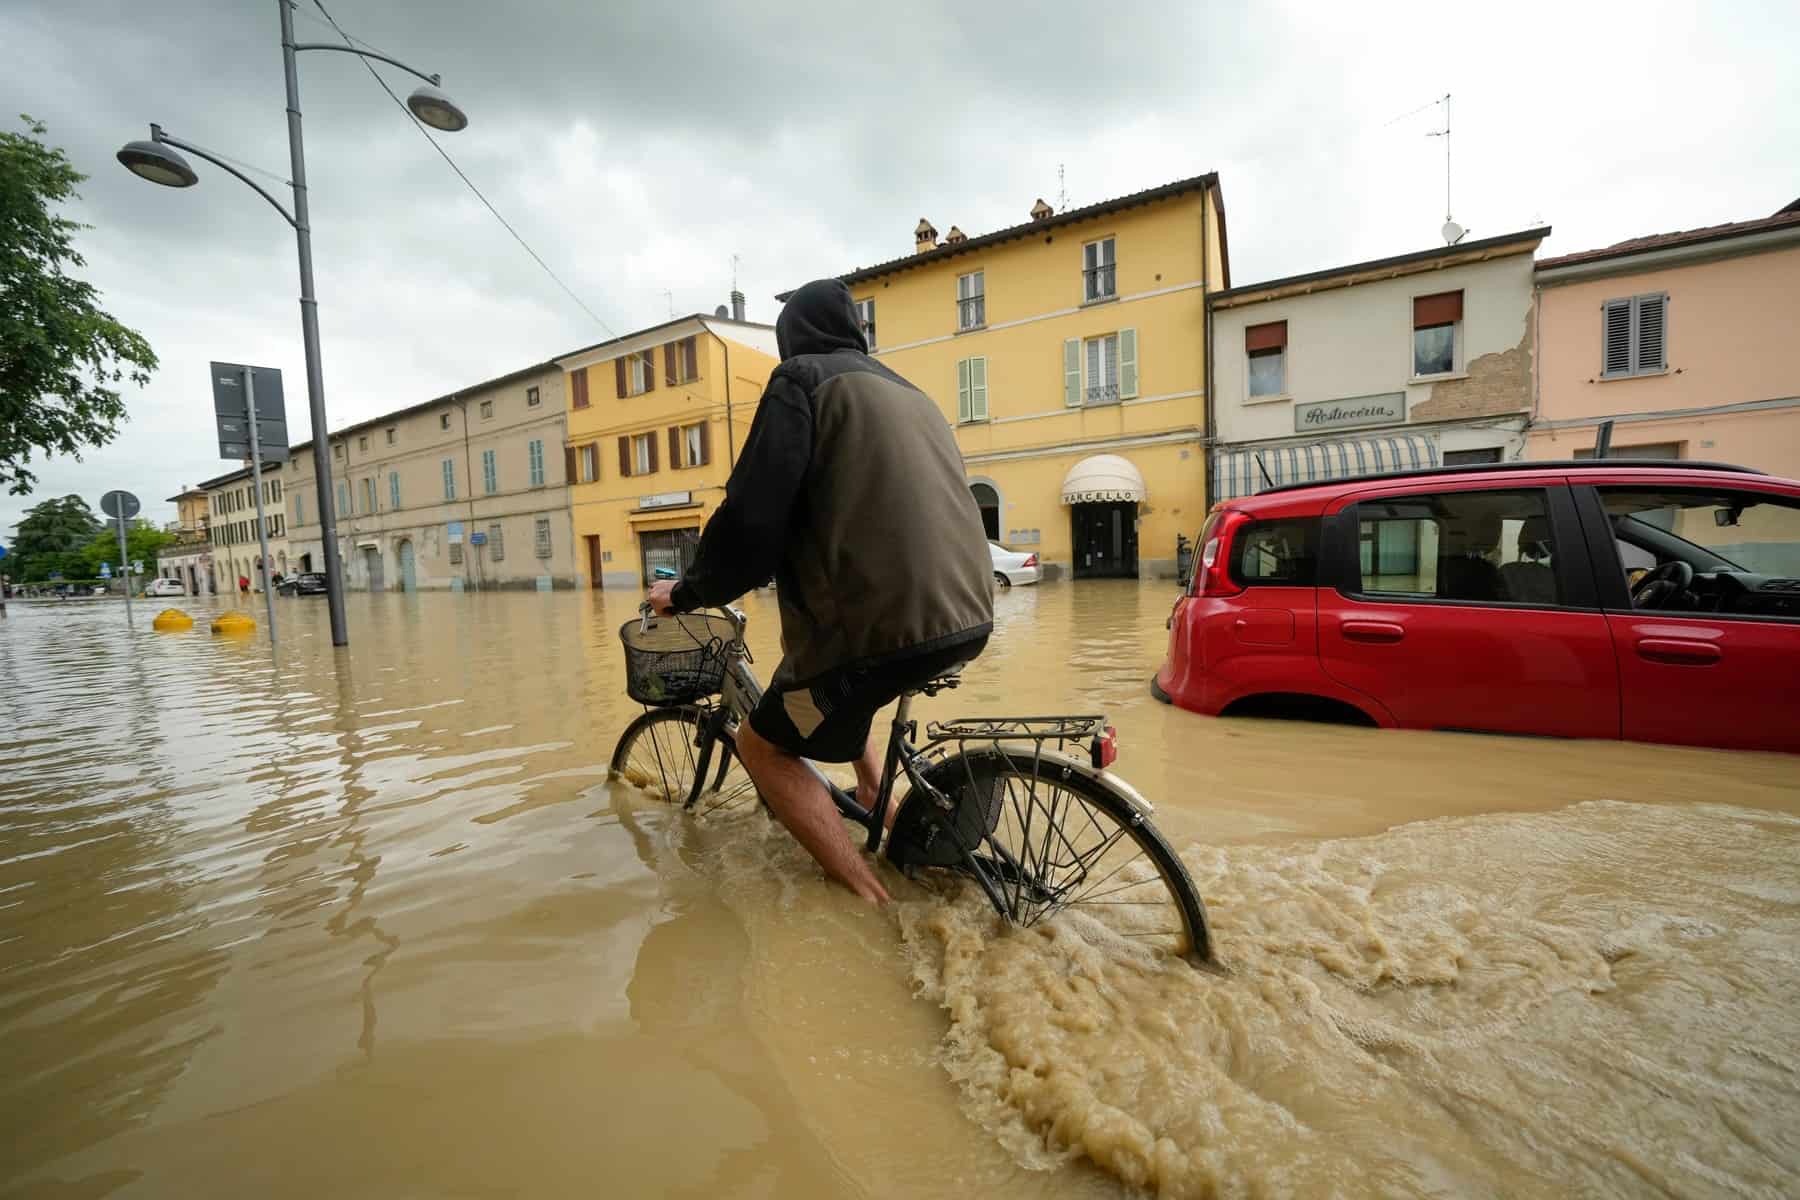 Alluvionato a nord-est dell’Italia, l’UE si mobilita per gli aiuti